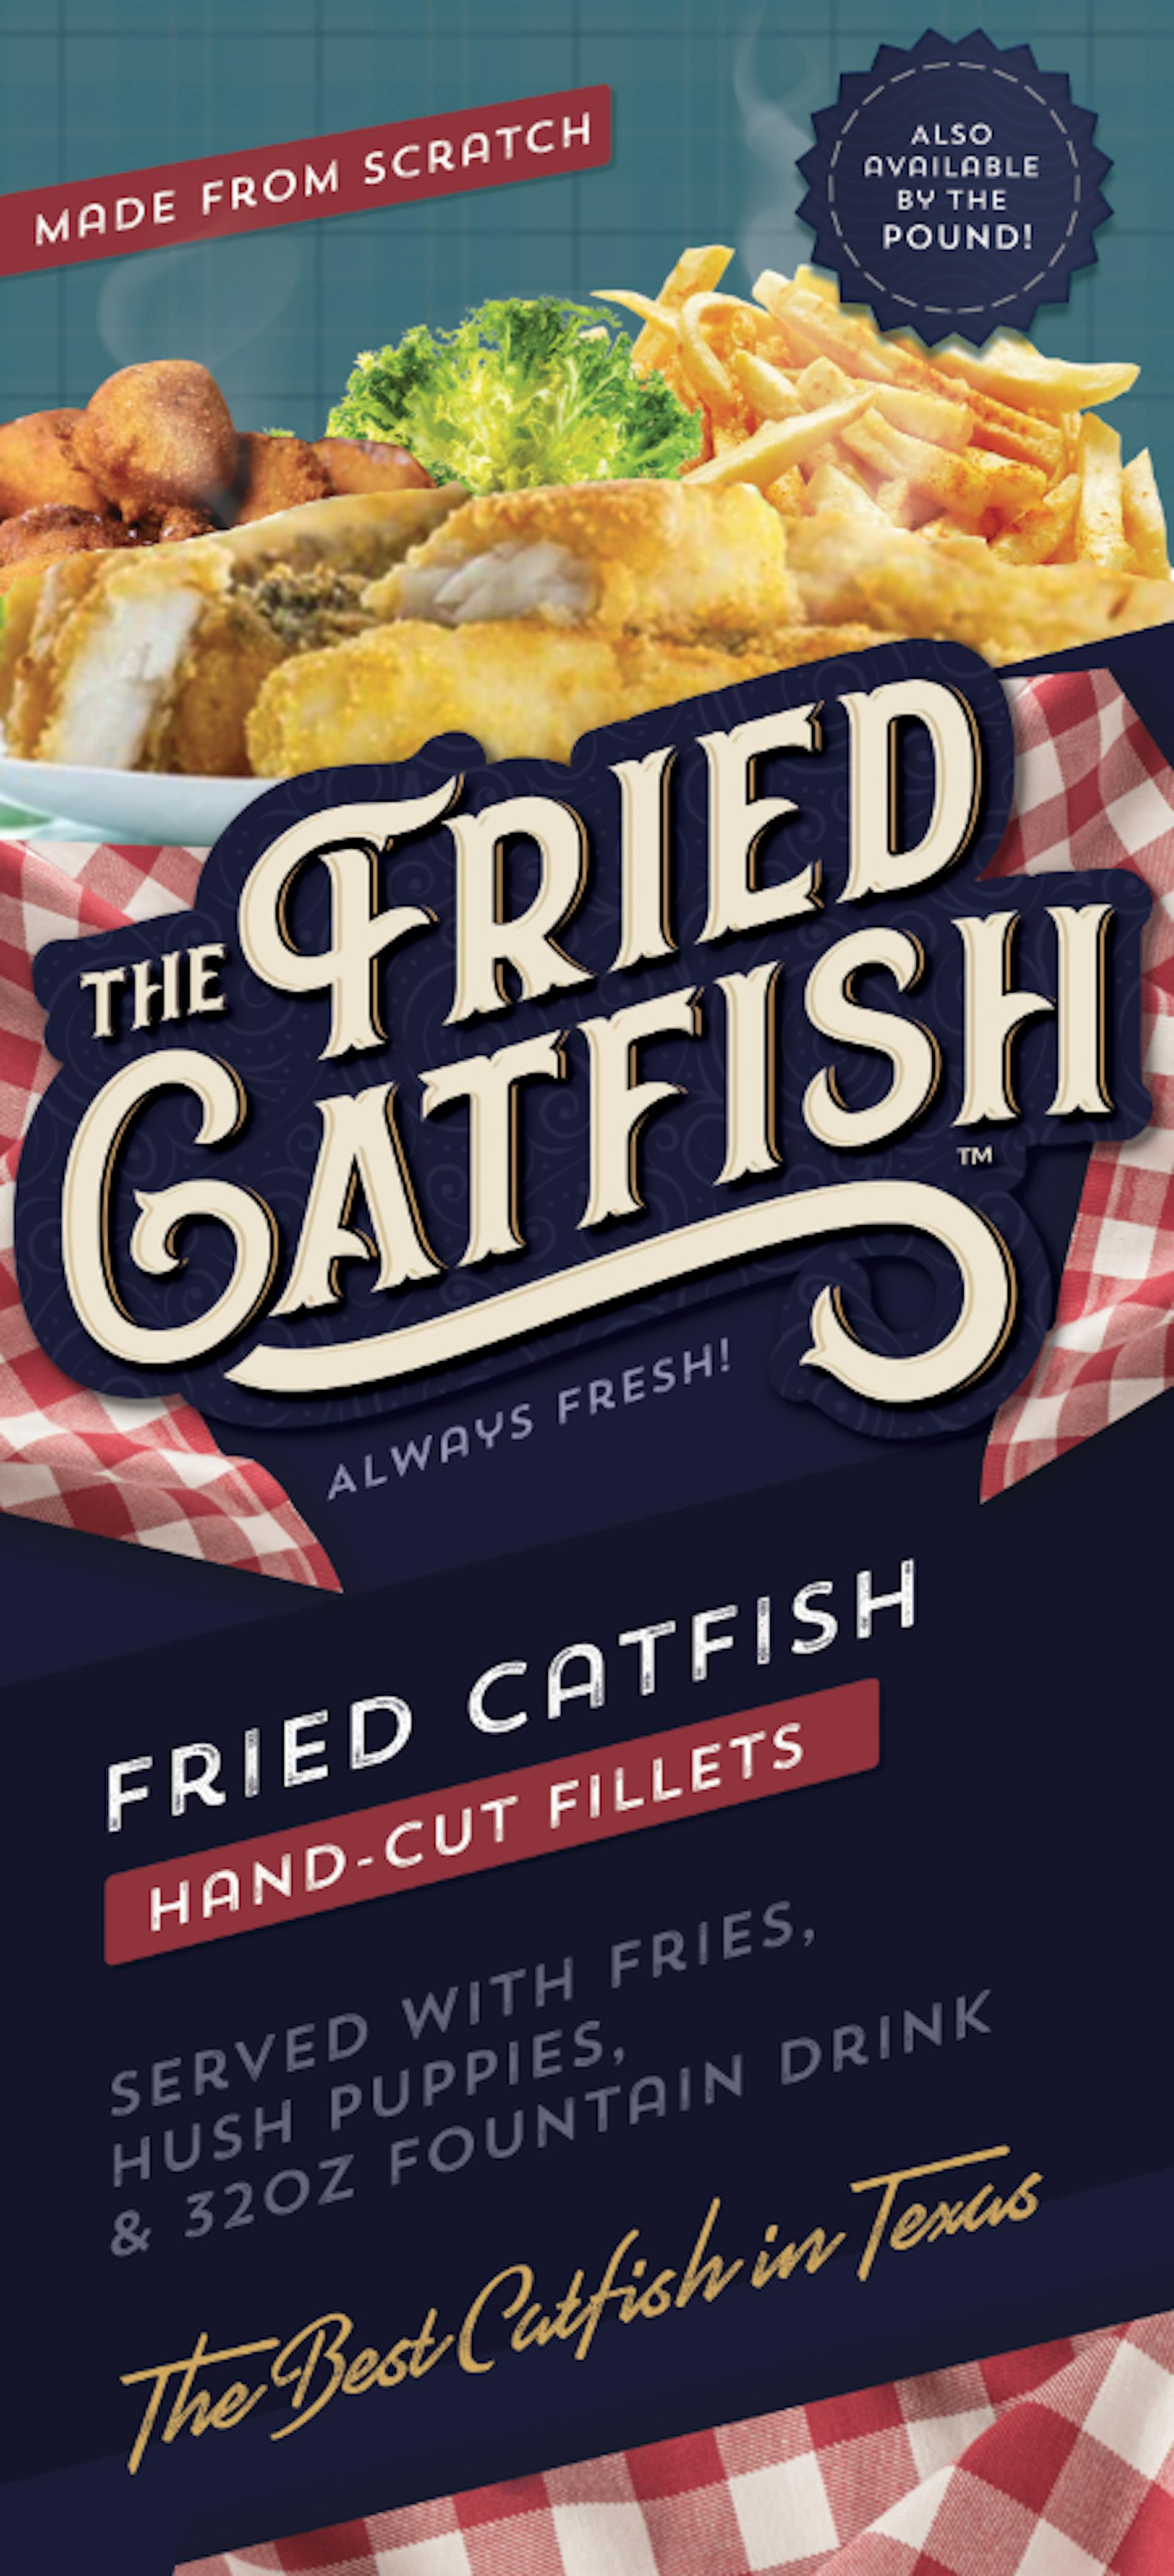 The Fried Catfish